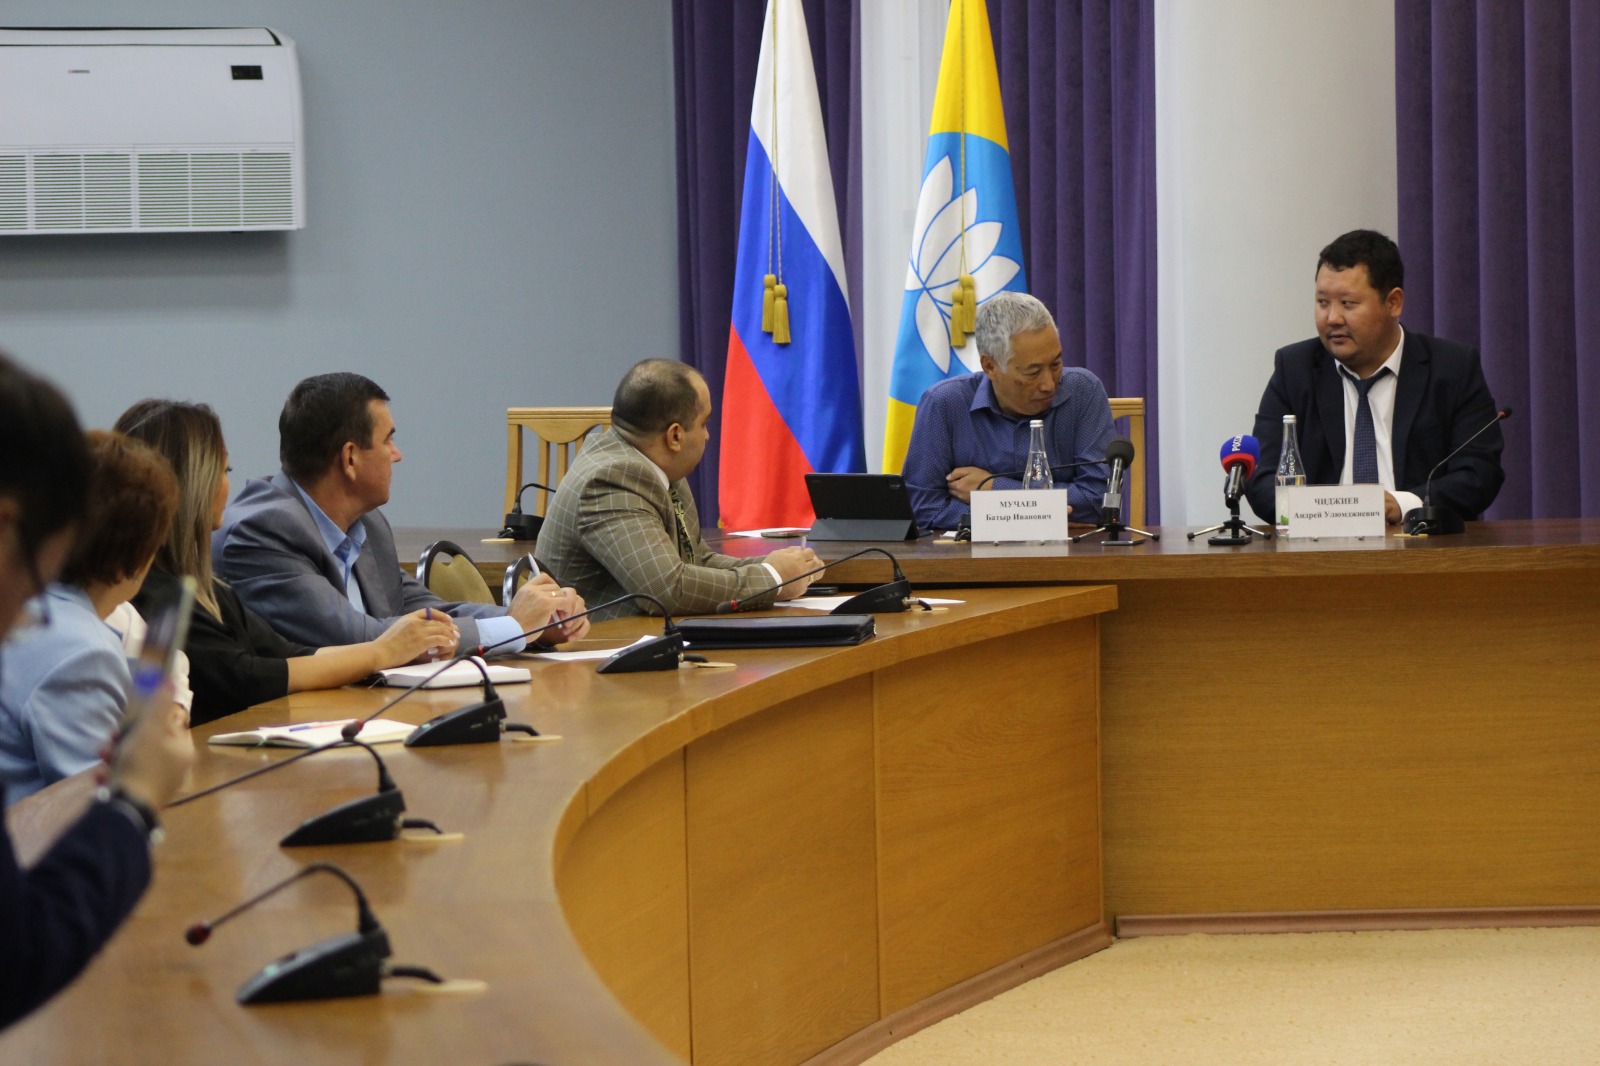 Общественная палата Республики Калмыкия провела очередную встречу в рамках проекта "Час с министром"